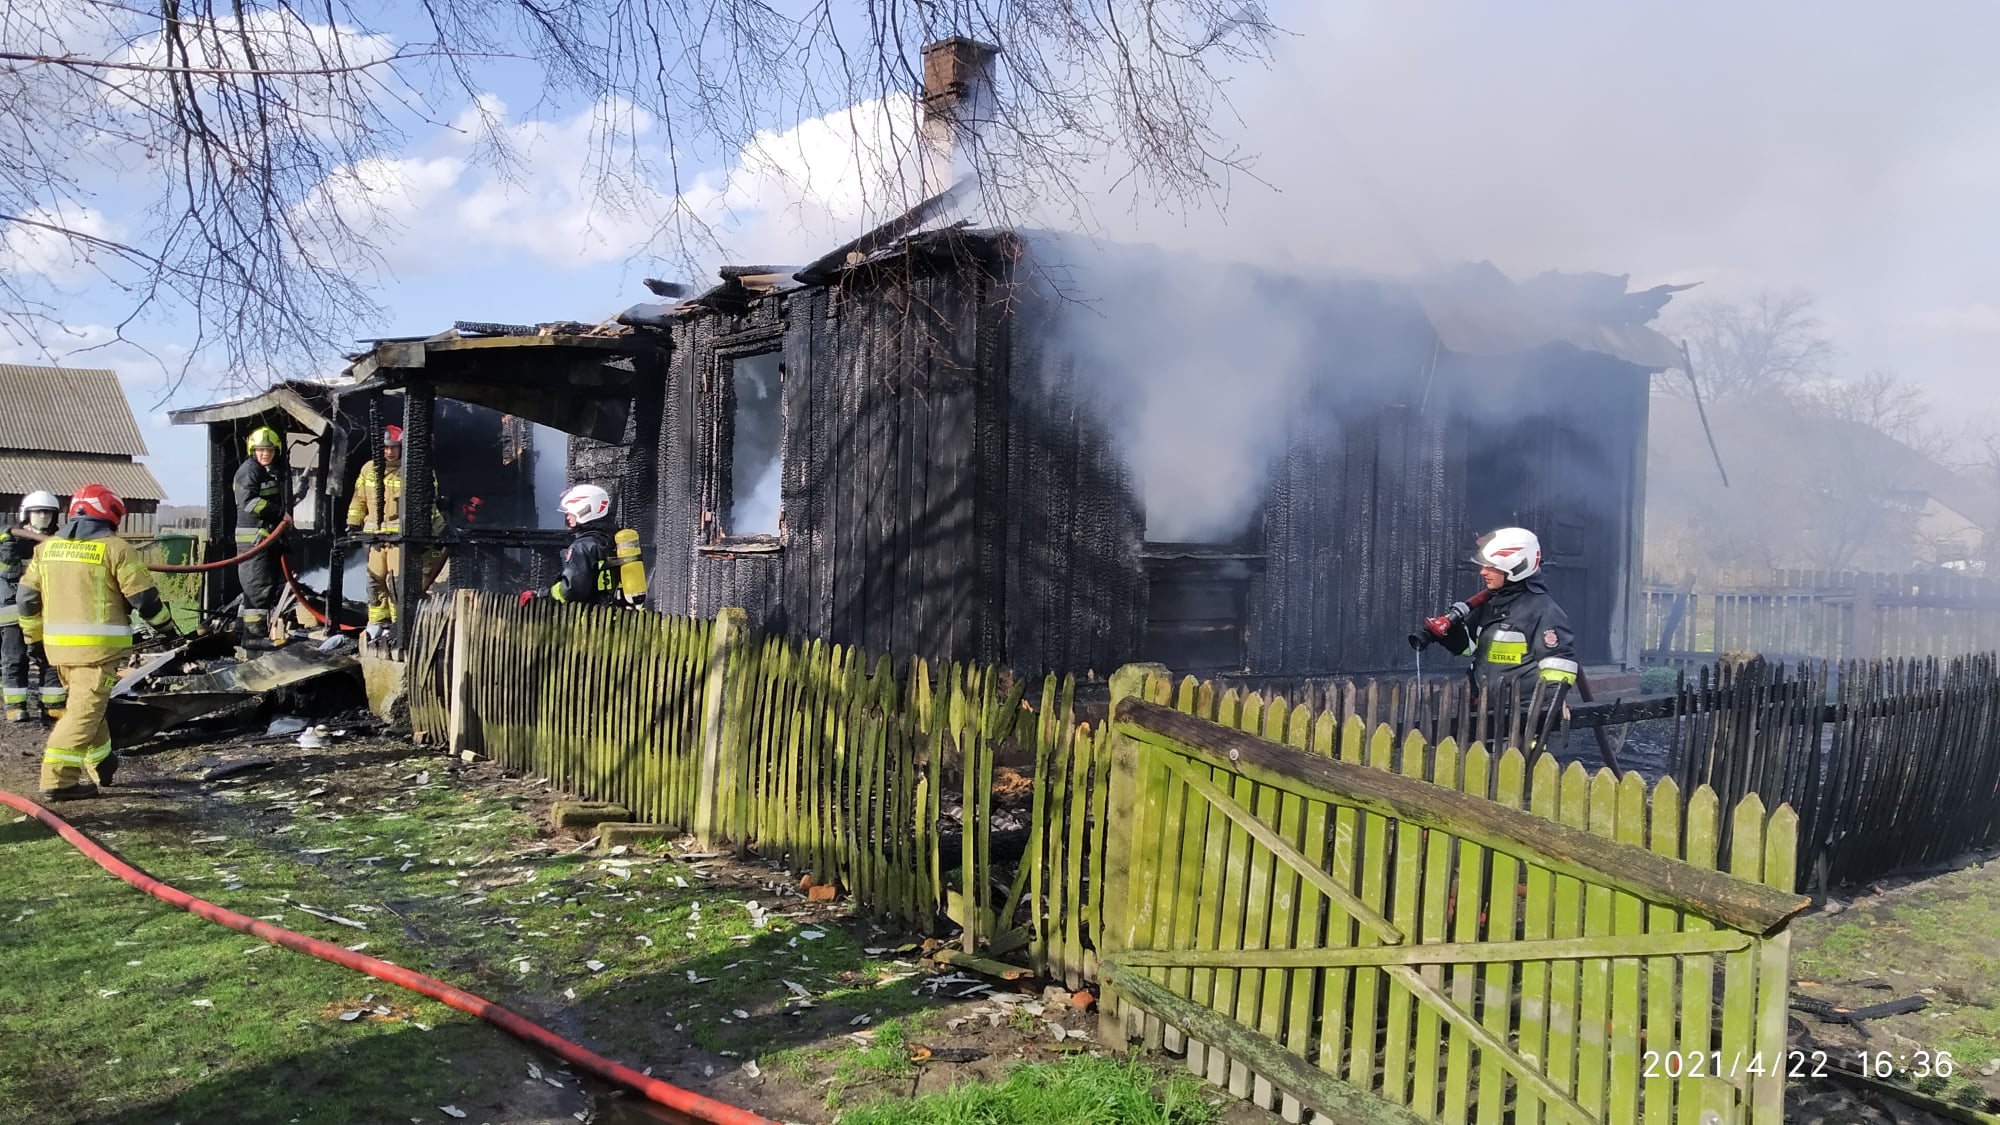 Drewniany dom doszczętnie spłonął. W akcji gaśniczej sześć zastępów straży pożarnej (wideo, zdjęcia)